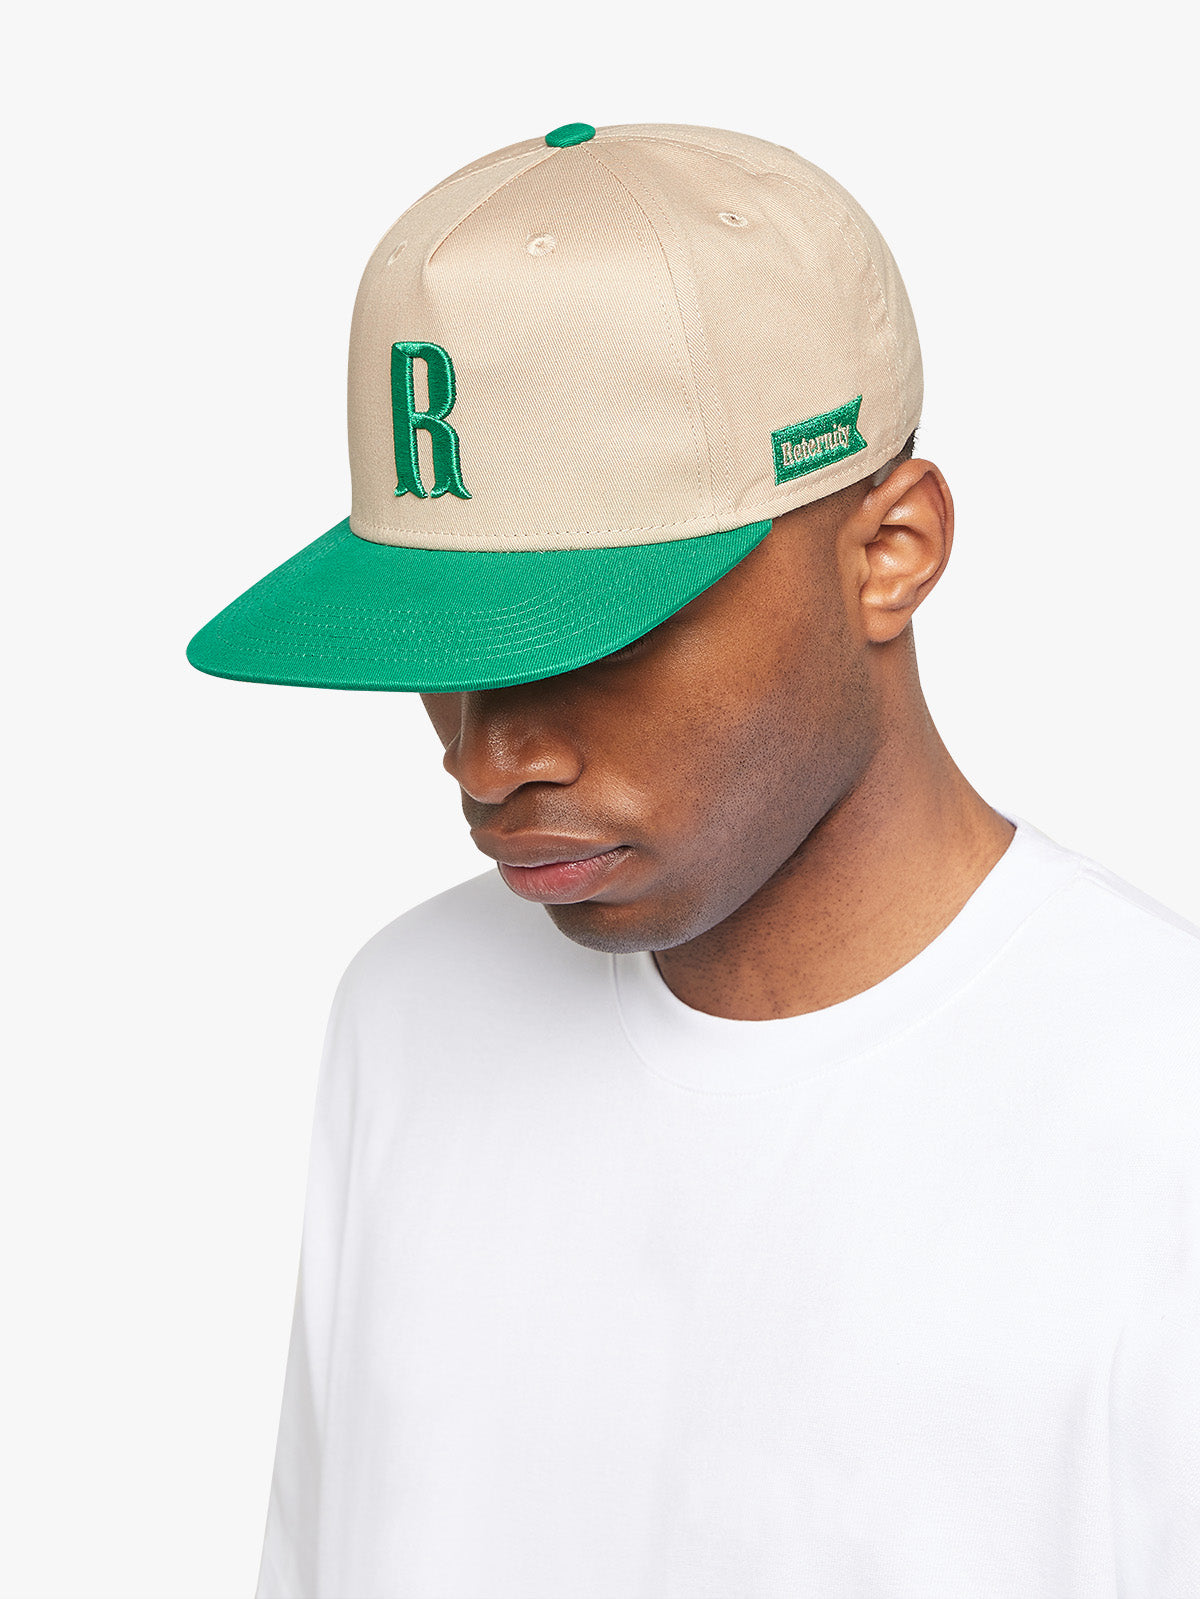 CAP “R” - GREEN